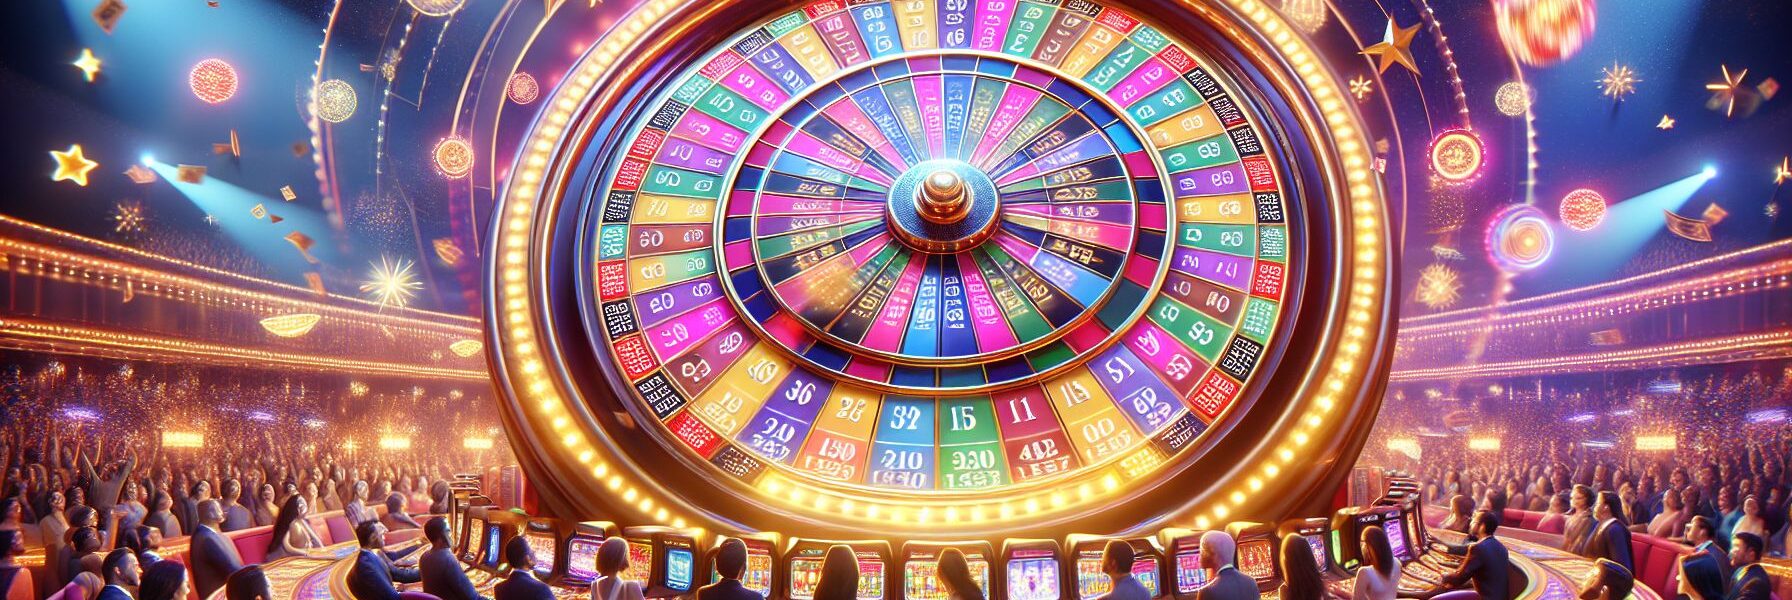 Permainan Mega Wheel Casino